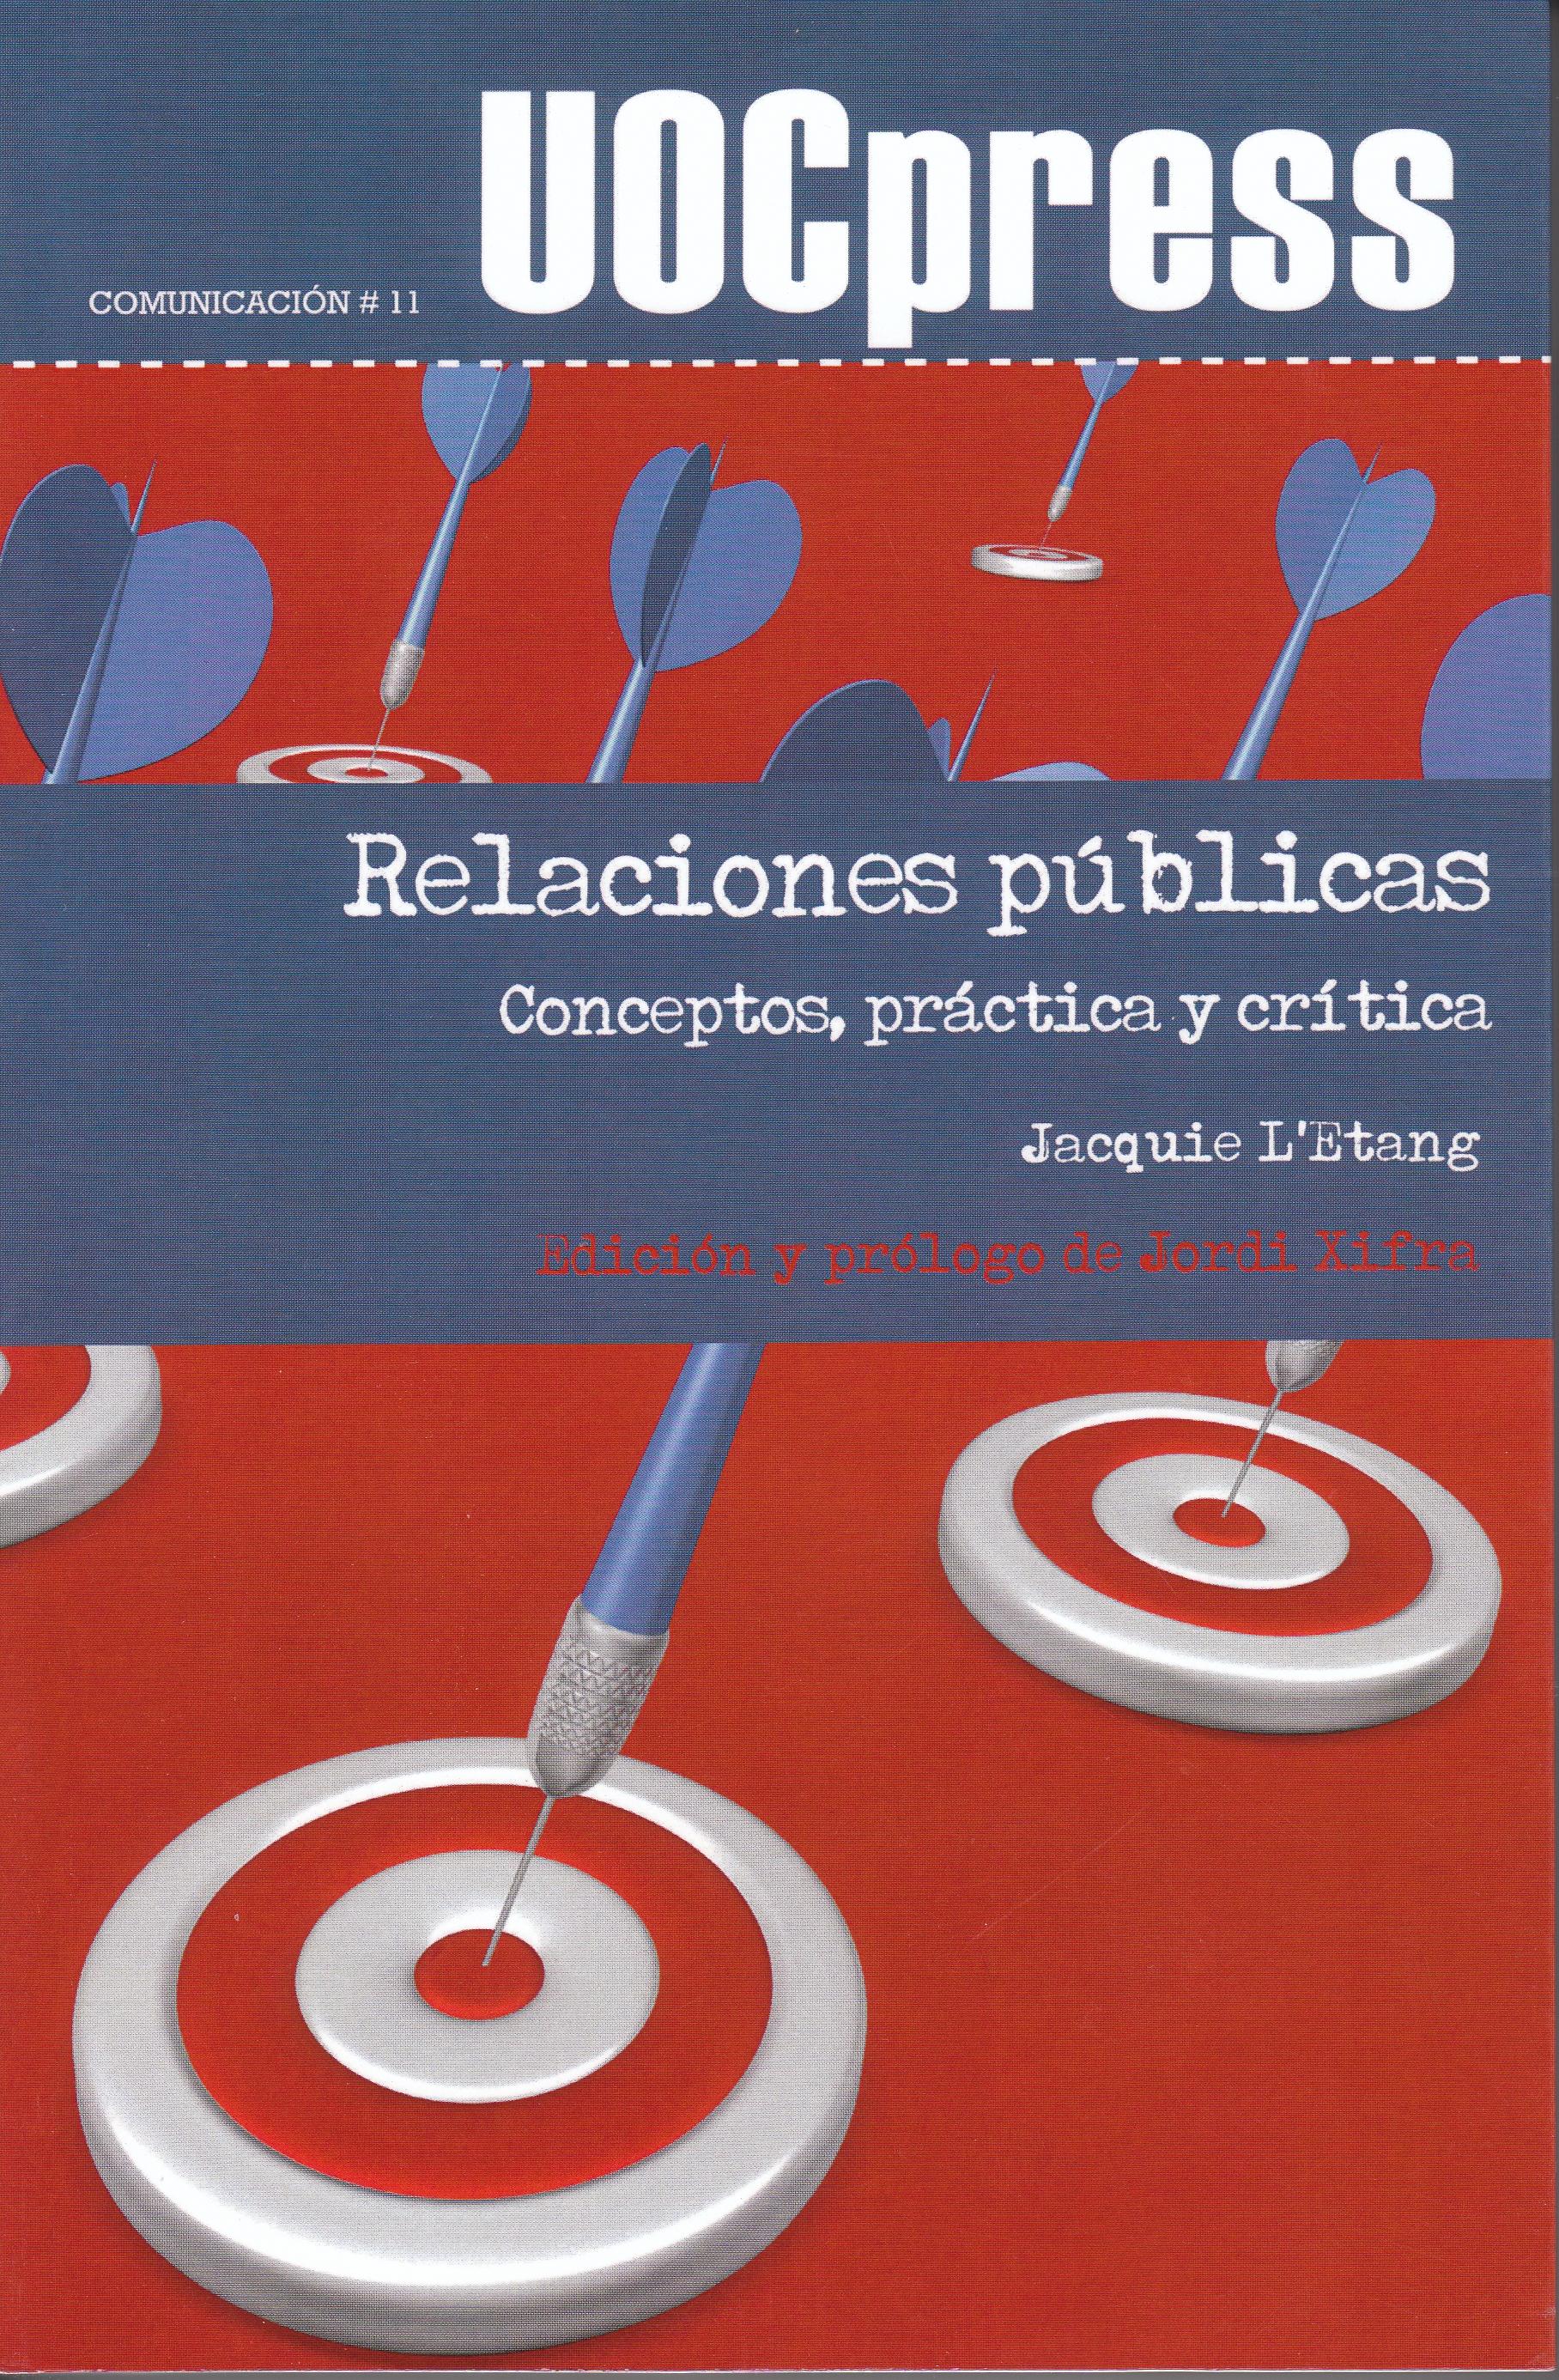 Relaciones Publicas "Conceptos, Practica y Critica". Conceptos, Practica y Critica